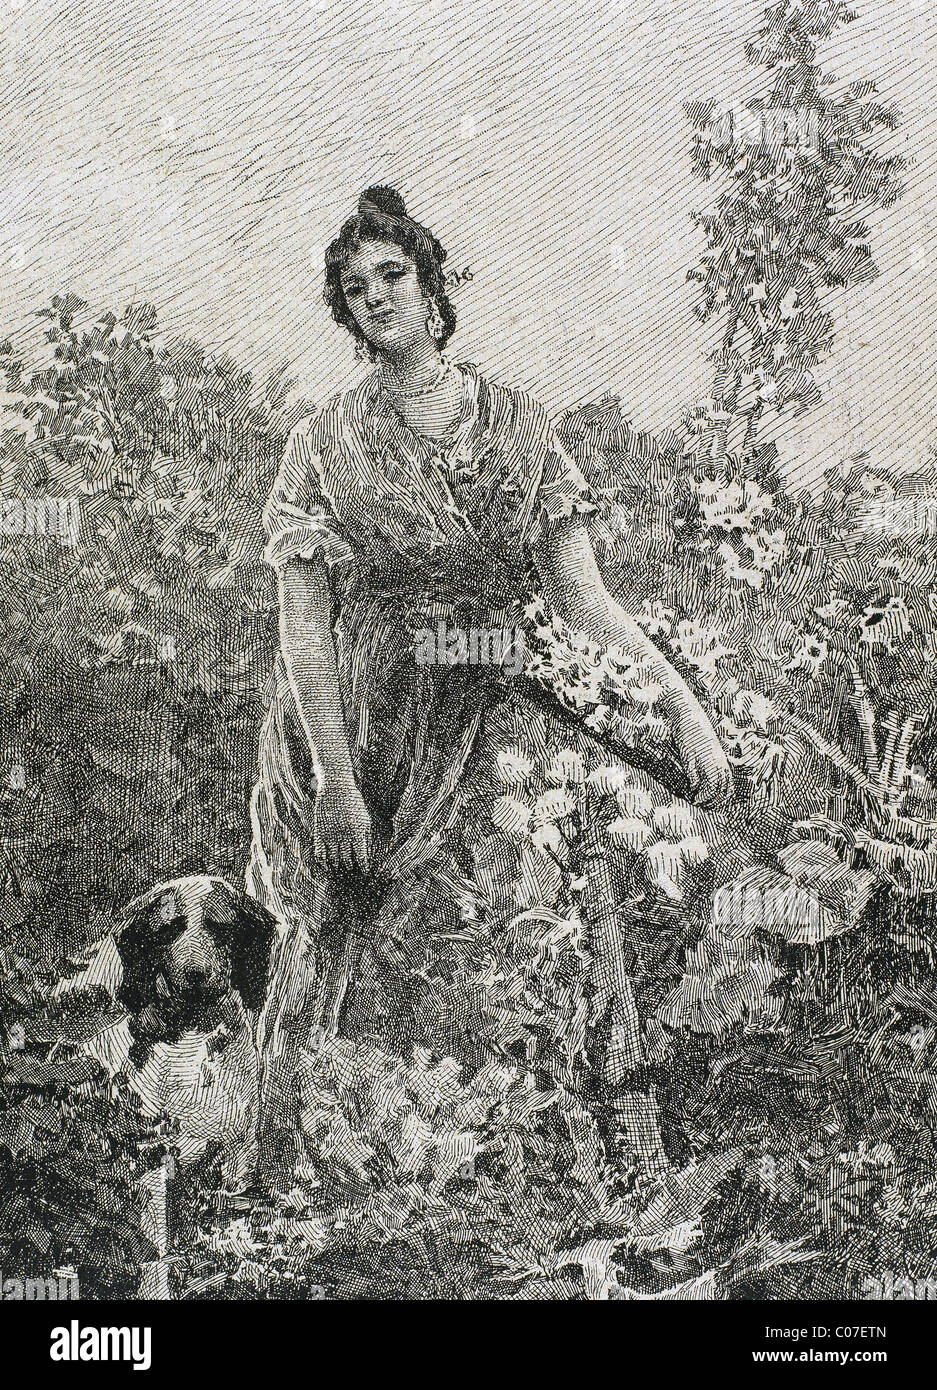 Valencia el jardinero. Grabado por Diéguez, 1867. Foto de stock